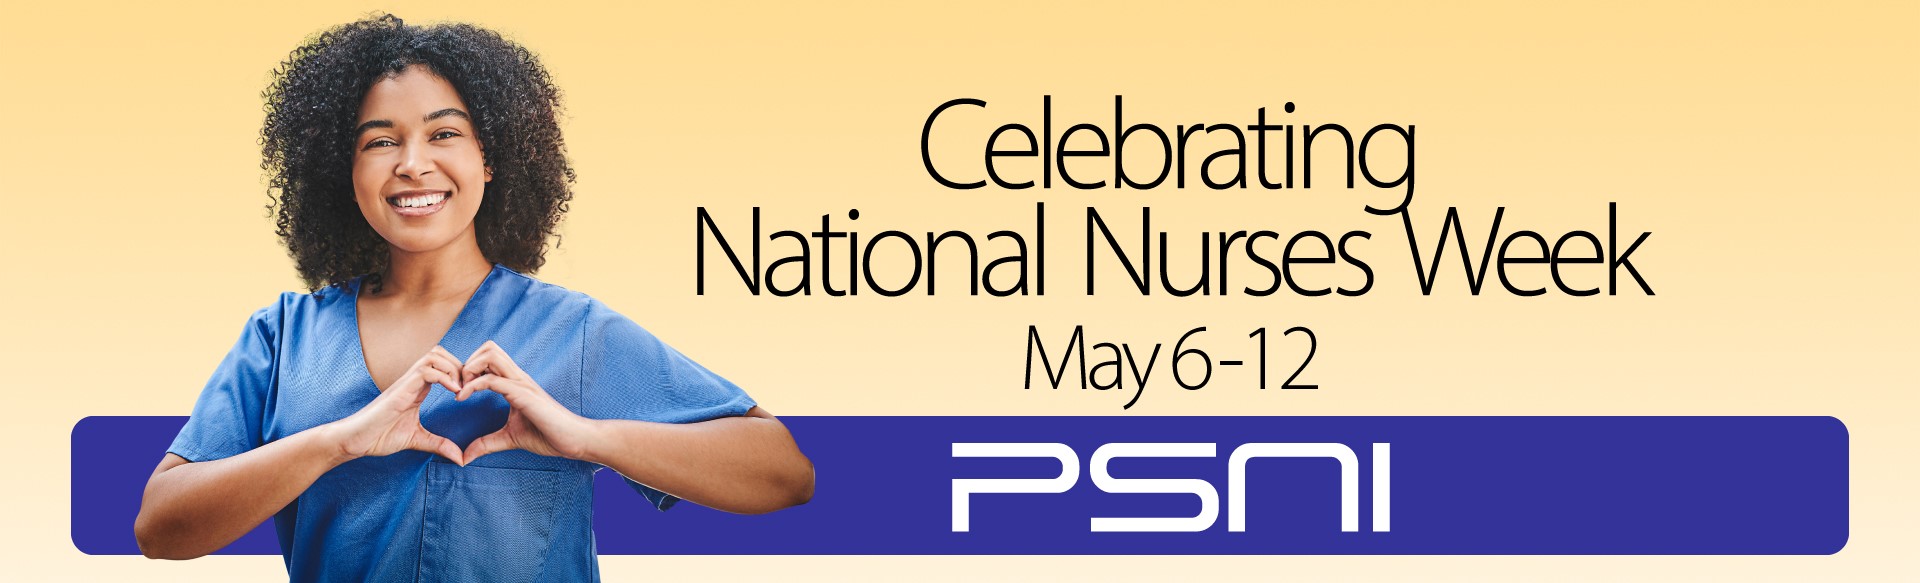 National Nurses Week 